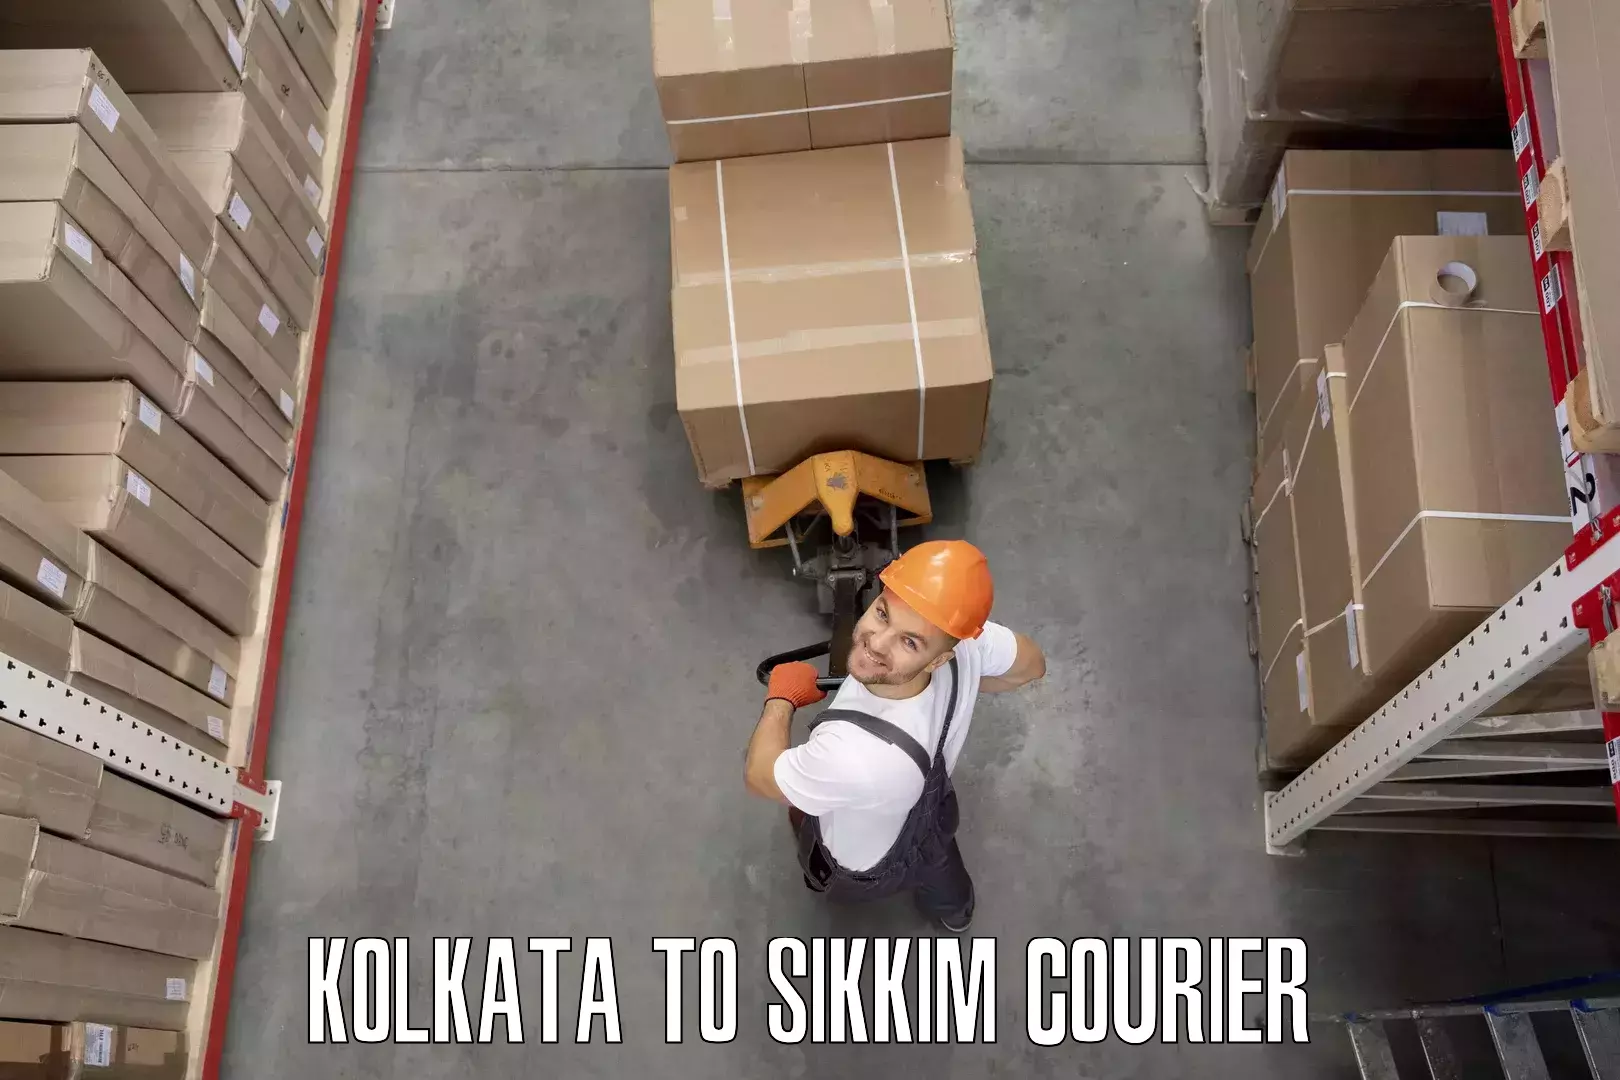 Furniture transport professionals Kolkata to Geyzing